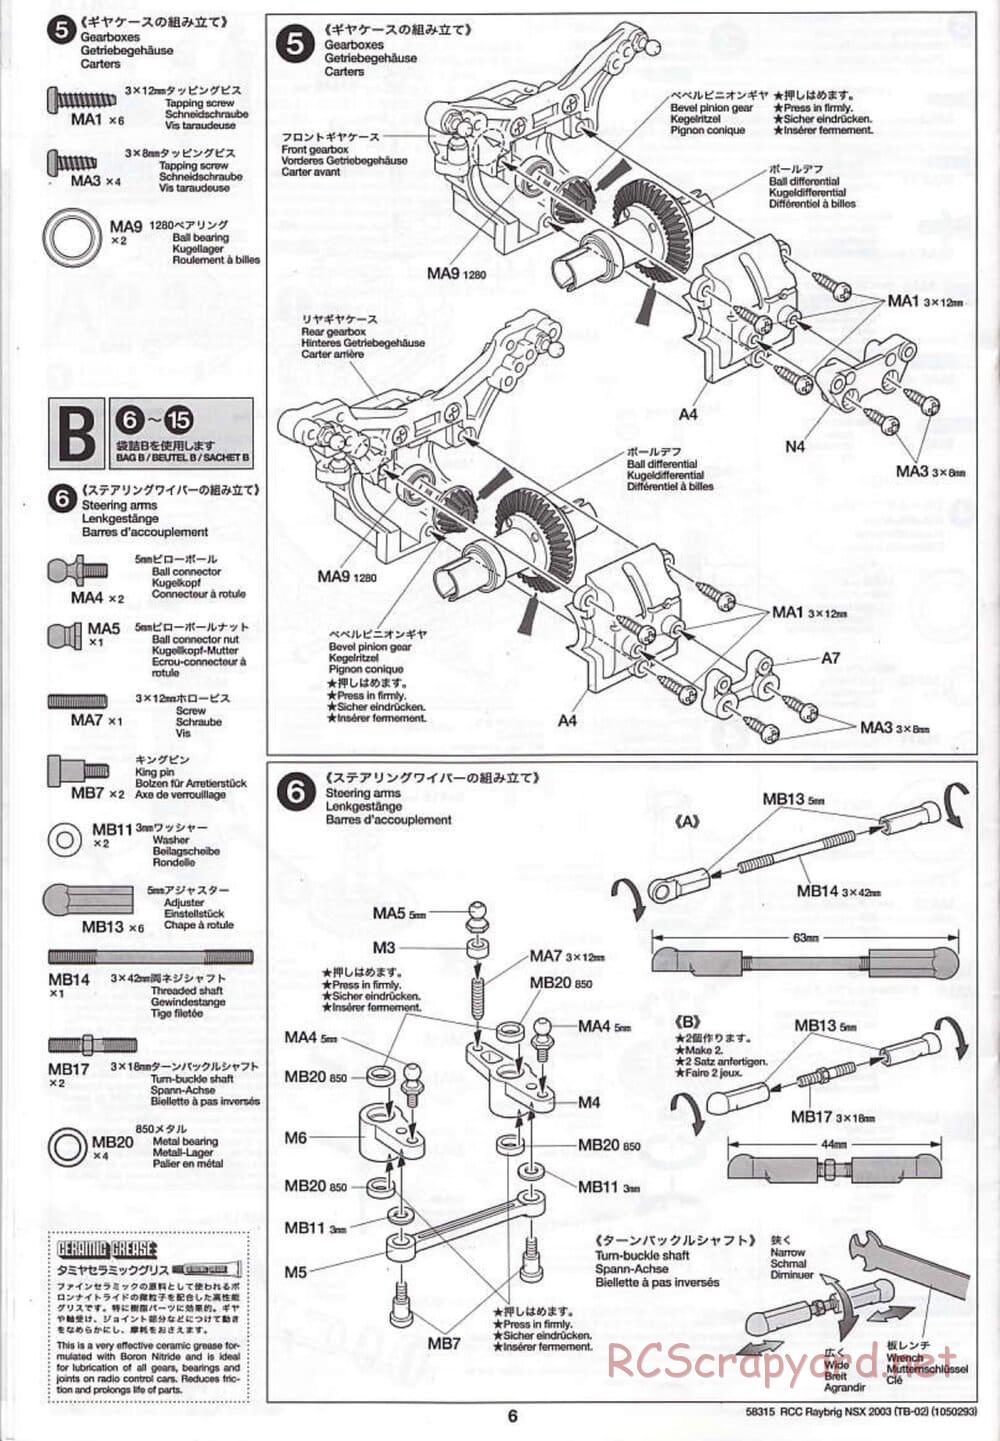 Tamiya - Raybrig NSX 2003 - TB-02 Chassis - Manual - Page 6